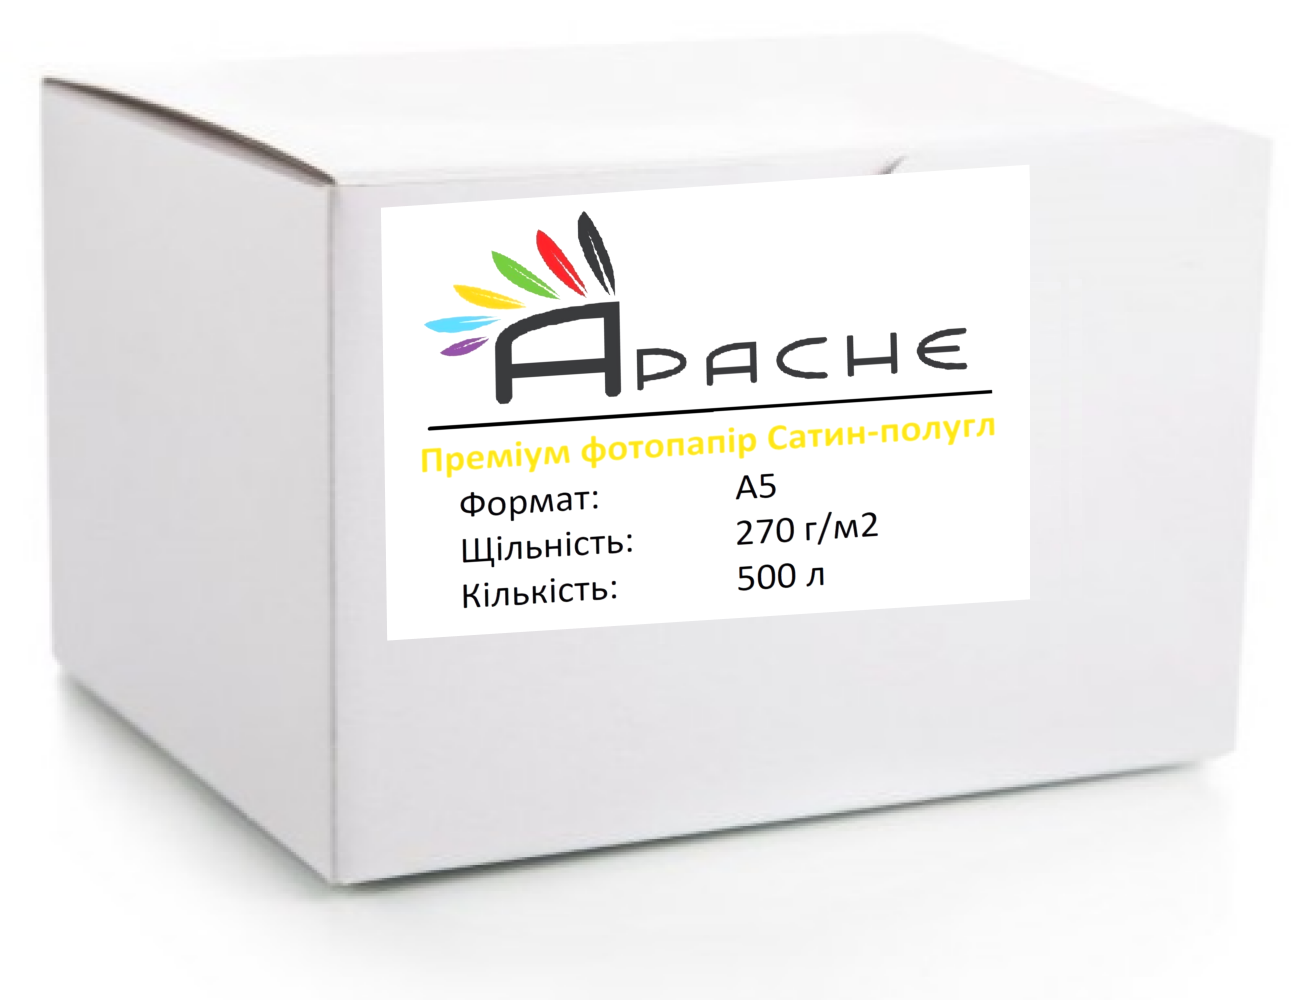 Фотопапір Apache A5 (500л) 270г/м2 Преміум Сатин напівглянець